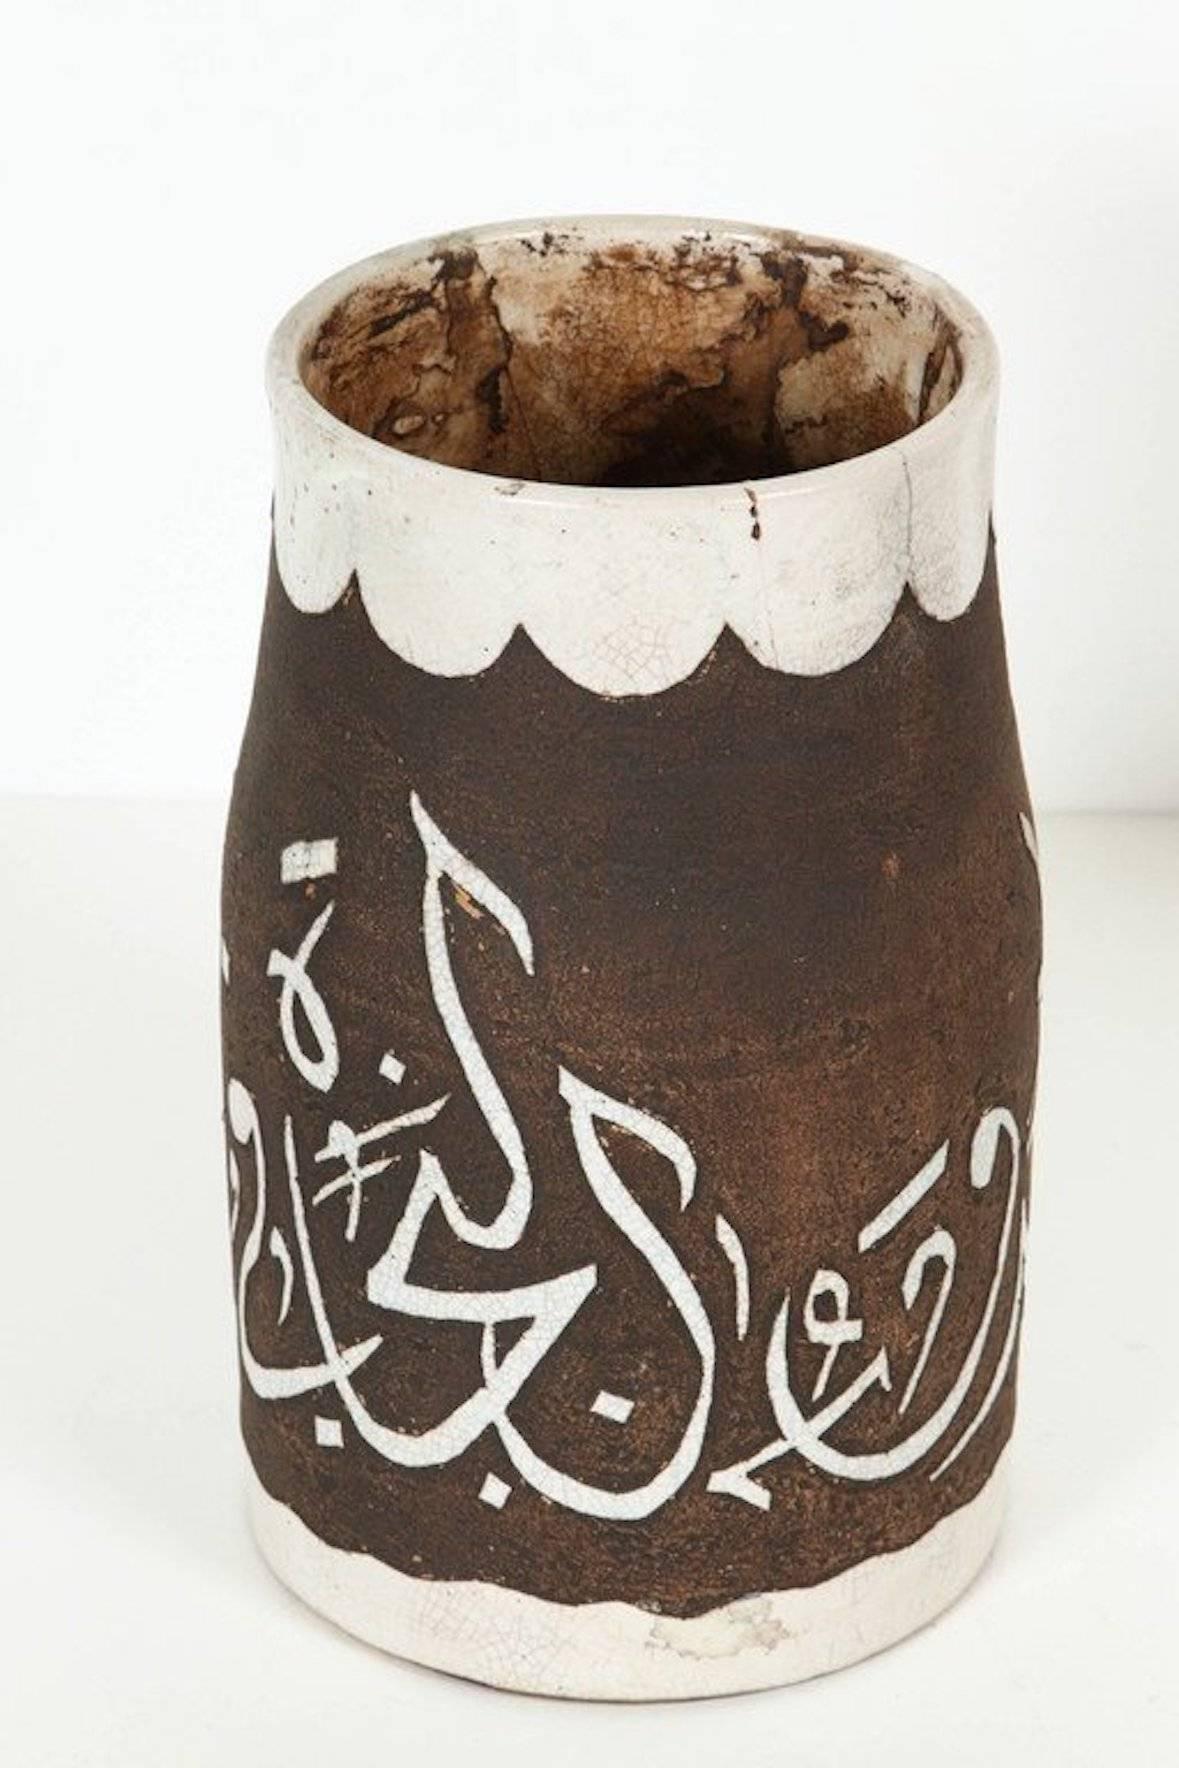 1940er Jahre antike braun und Elfenbein handgefertigte marokkanische Keramik Vase.Sehr dekorativ gemeißelt kleinen braunen und Elfenbein cor Keramik handgefertigt von Handwerkern in Fes Marokko.Hand graviert geätzt Keramik mit Elfenbein arabische